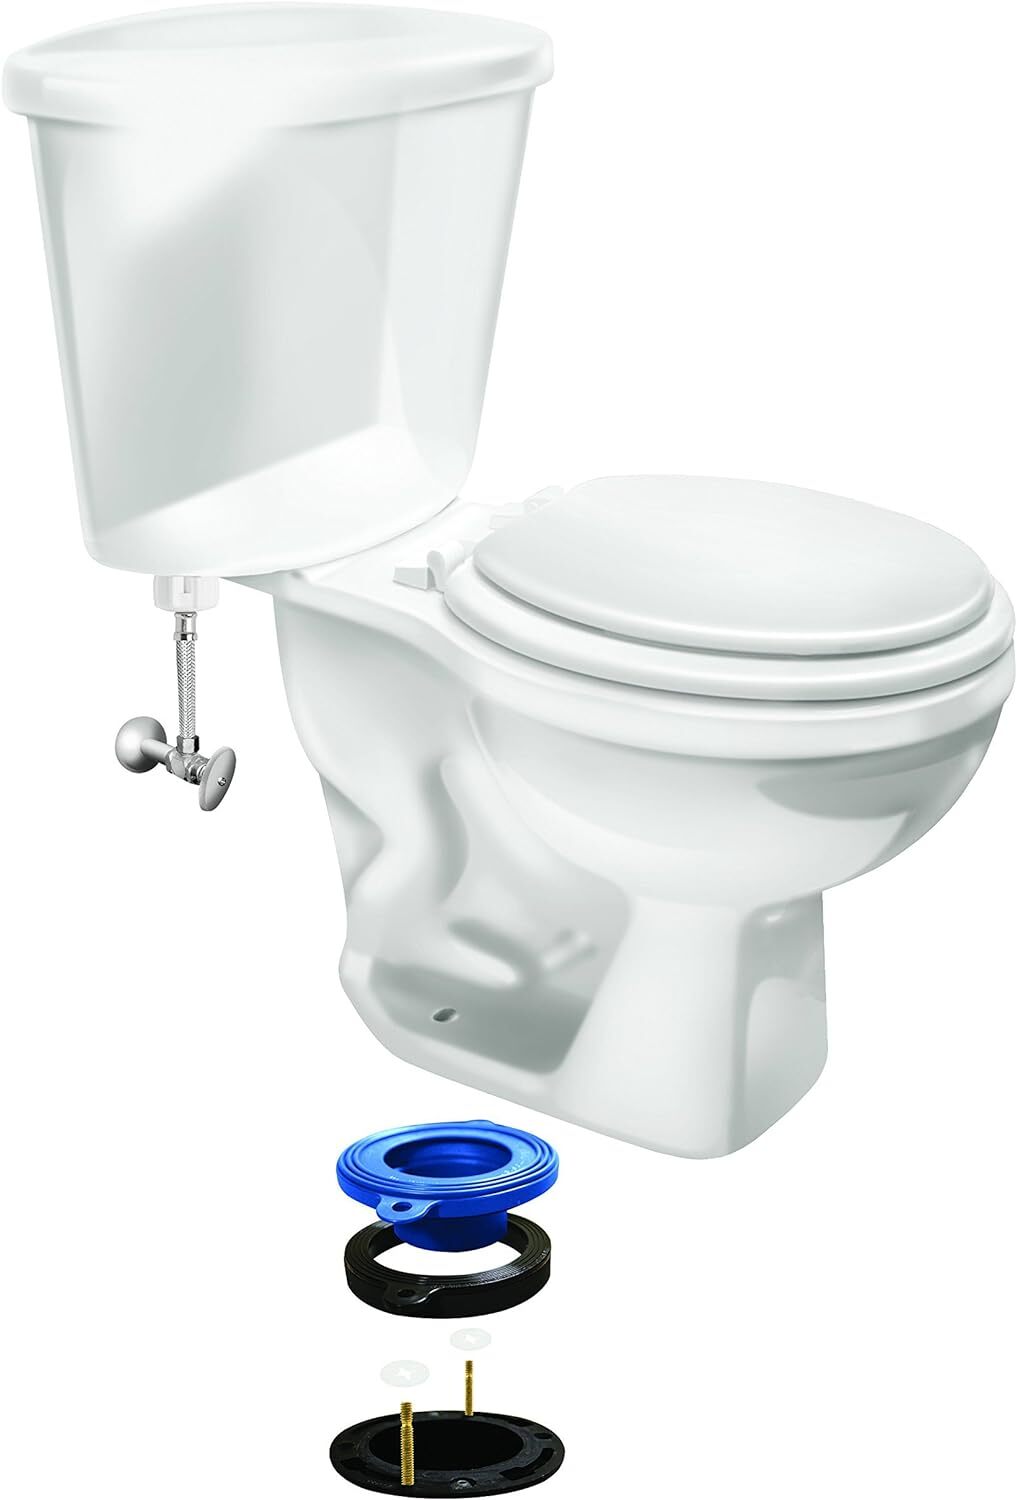 Best-Toilet-Seal-in-2021-–-Lifelong-Leak-Proof-Performance-TN